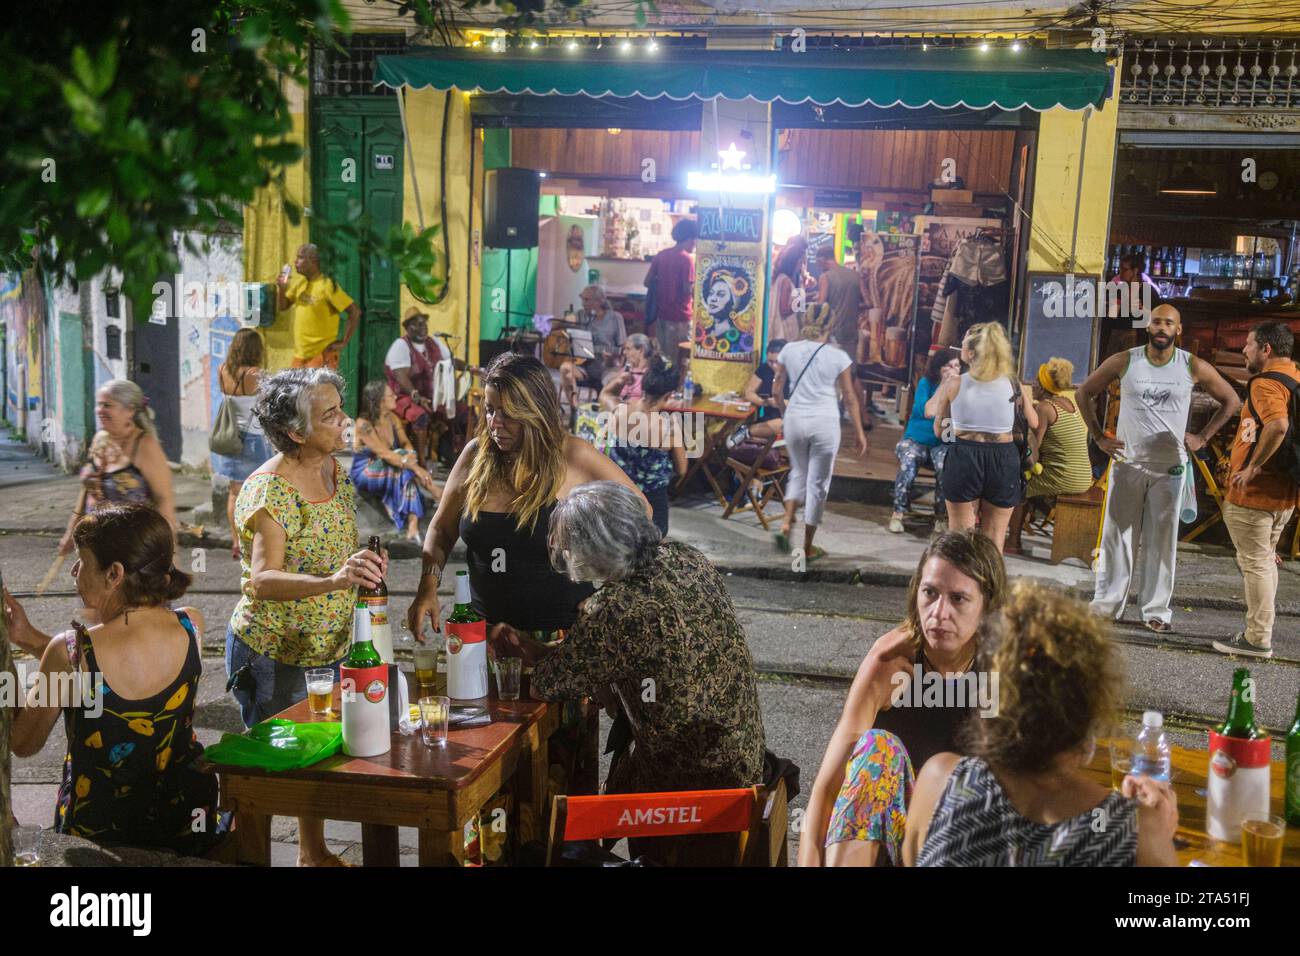 Alquimia Bar am Largo das Neves Platz im Viertel Santa Teresa, ein berühmter Treffpunkt für Intellektuelle, Wissenschaftler, Künstler und linke Politiker, die von ihrem historischen Charakter, ihrem kulturellen Leben und ihrem Lebensstandard angezogen werden. Der böhmische Lebensstil hat dazu beigetragen, dass Santa Teresa eine der wichtigsten Touristenattraktionen von Rio de Janeiro ist und dass es 2016 als eines der einzigartigsten Viertel der Welt anerkannt wurde. Poster von Marielle Franco am Bareingang. Marielle war eine brasilianische Feministin, Politikerin und Menschenrechtsaktivistin, die am 14. März 2018 in Rio de Jane ermordet wurde Stockfoto